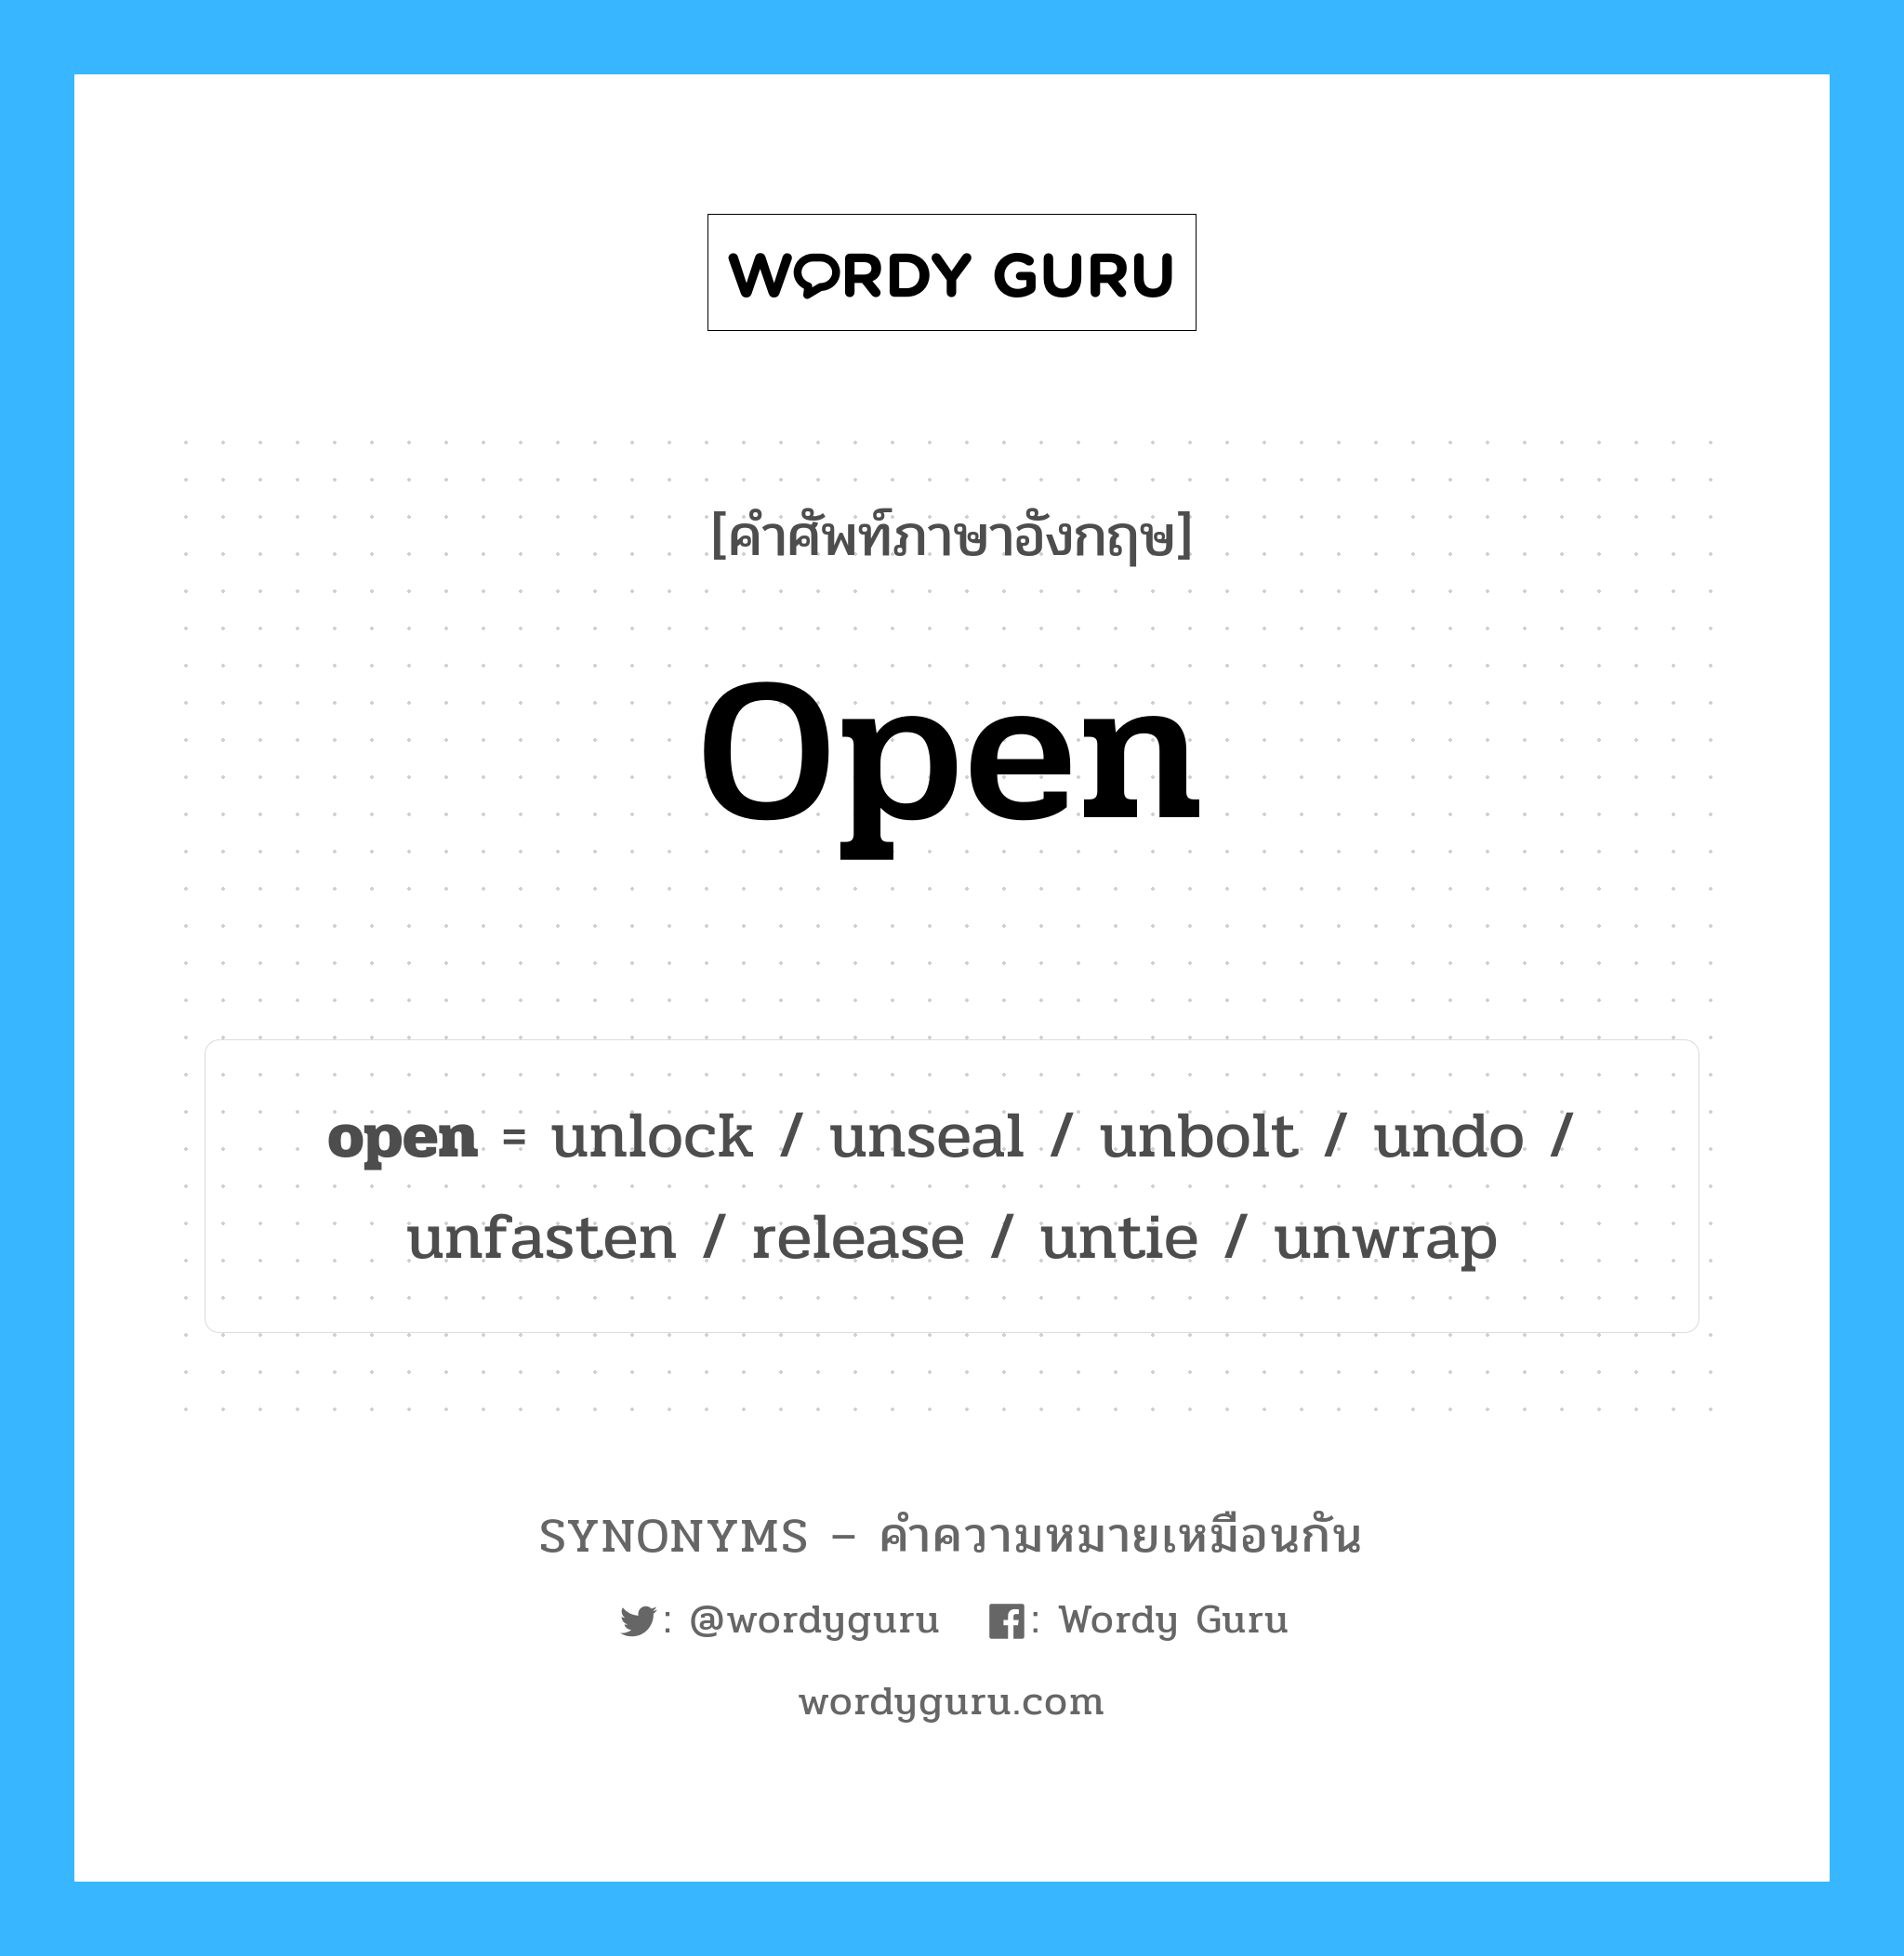 open เป็นหนึ่งใน undo และมีคำอื่น ๆ อีกดังนี้, คำศัพท์ภาษาอังกฤษ open ความหมายคล้ายกันกับ undo แปลว่า ยกเลิก หมวด undo